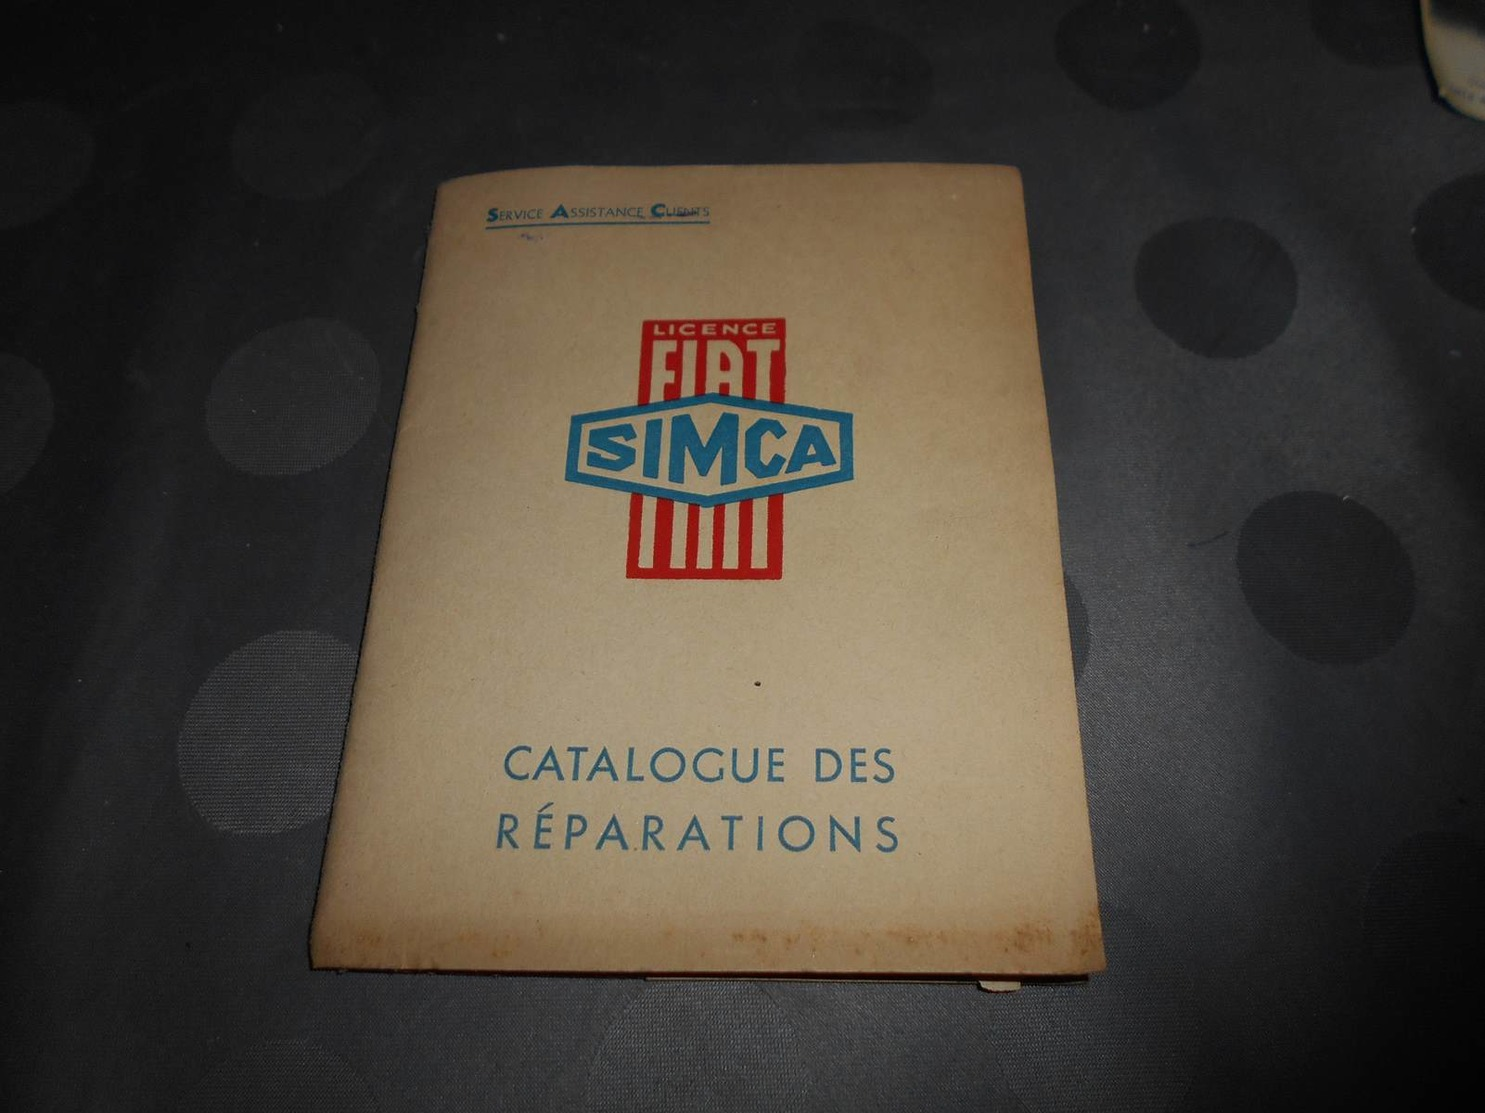 107 - Catalogue Des Réparations FIAT-SIMCA, Service Assistance - Voitures